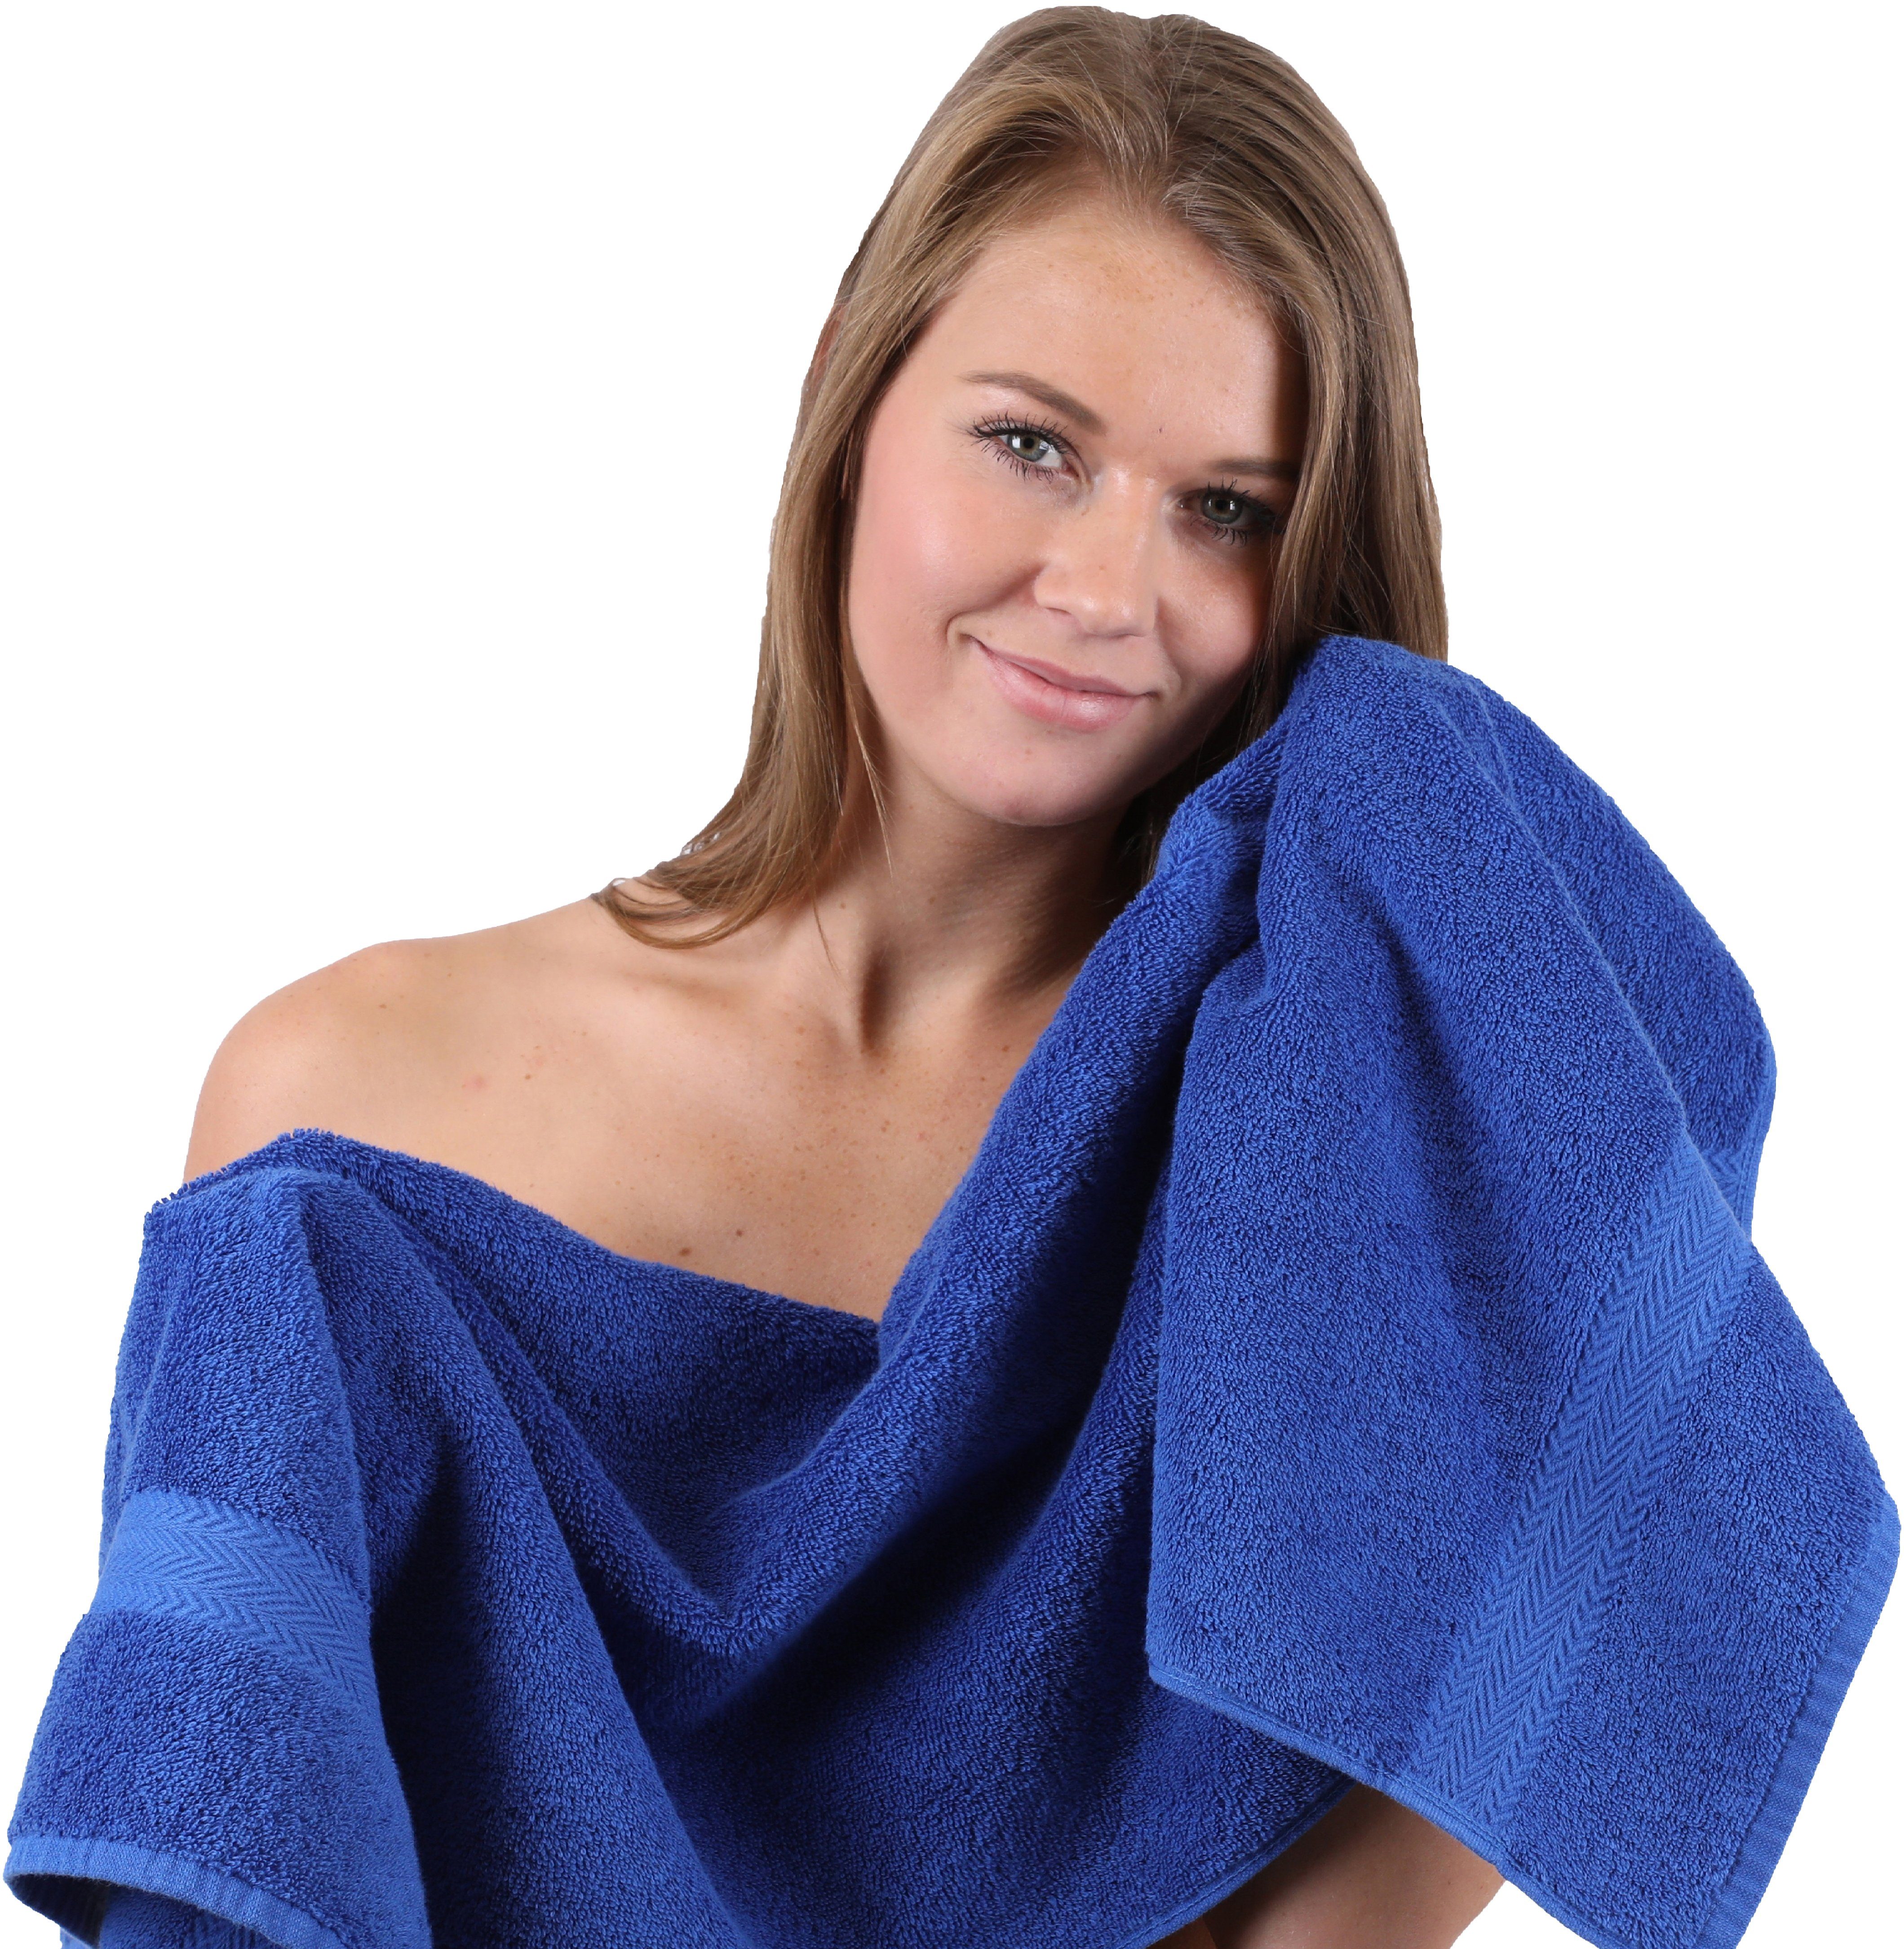 Betz Handtuch Set 10-TLG. 100% Baumwolle Handtuch-Set apfelgrün, royalblau & 100% Baumwolle CLASSIC Fb